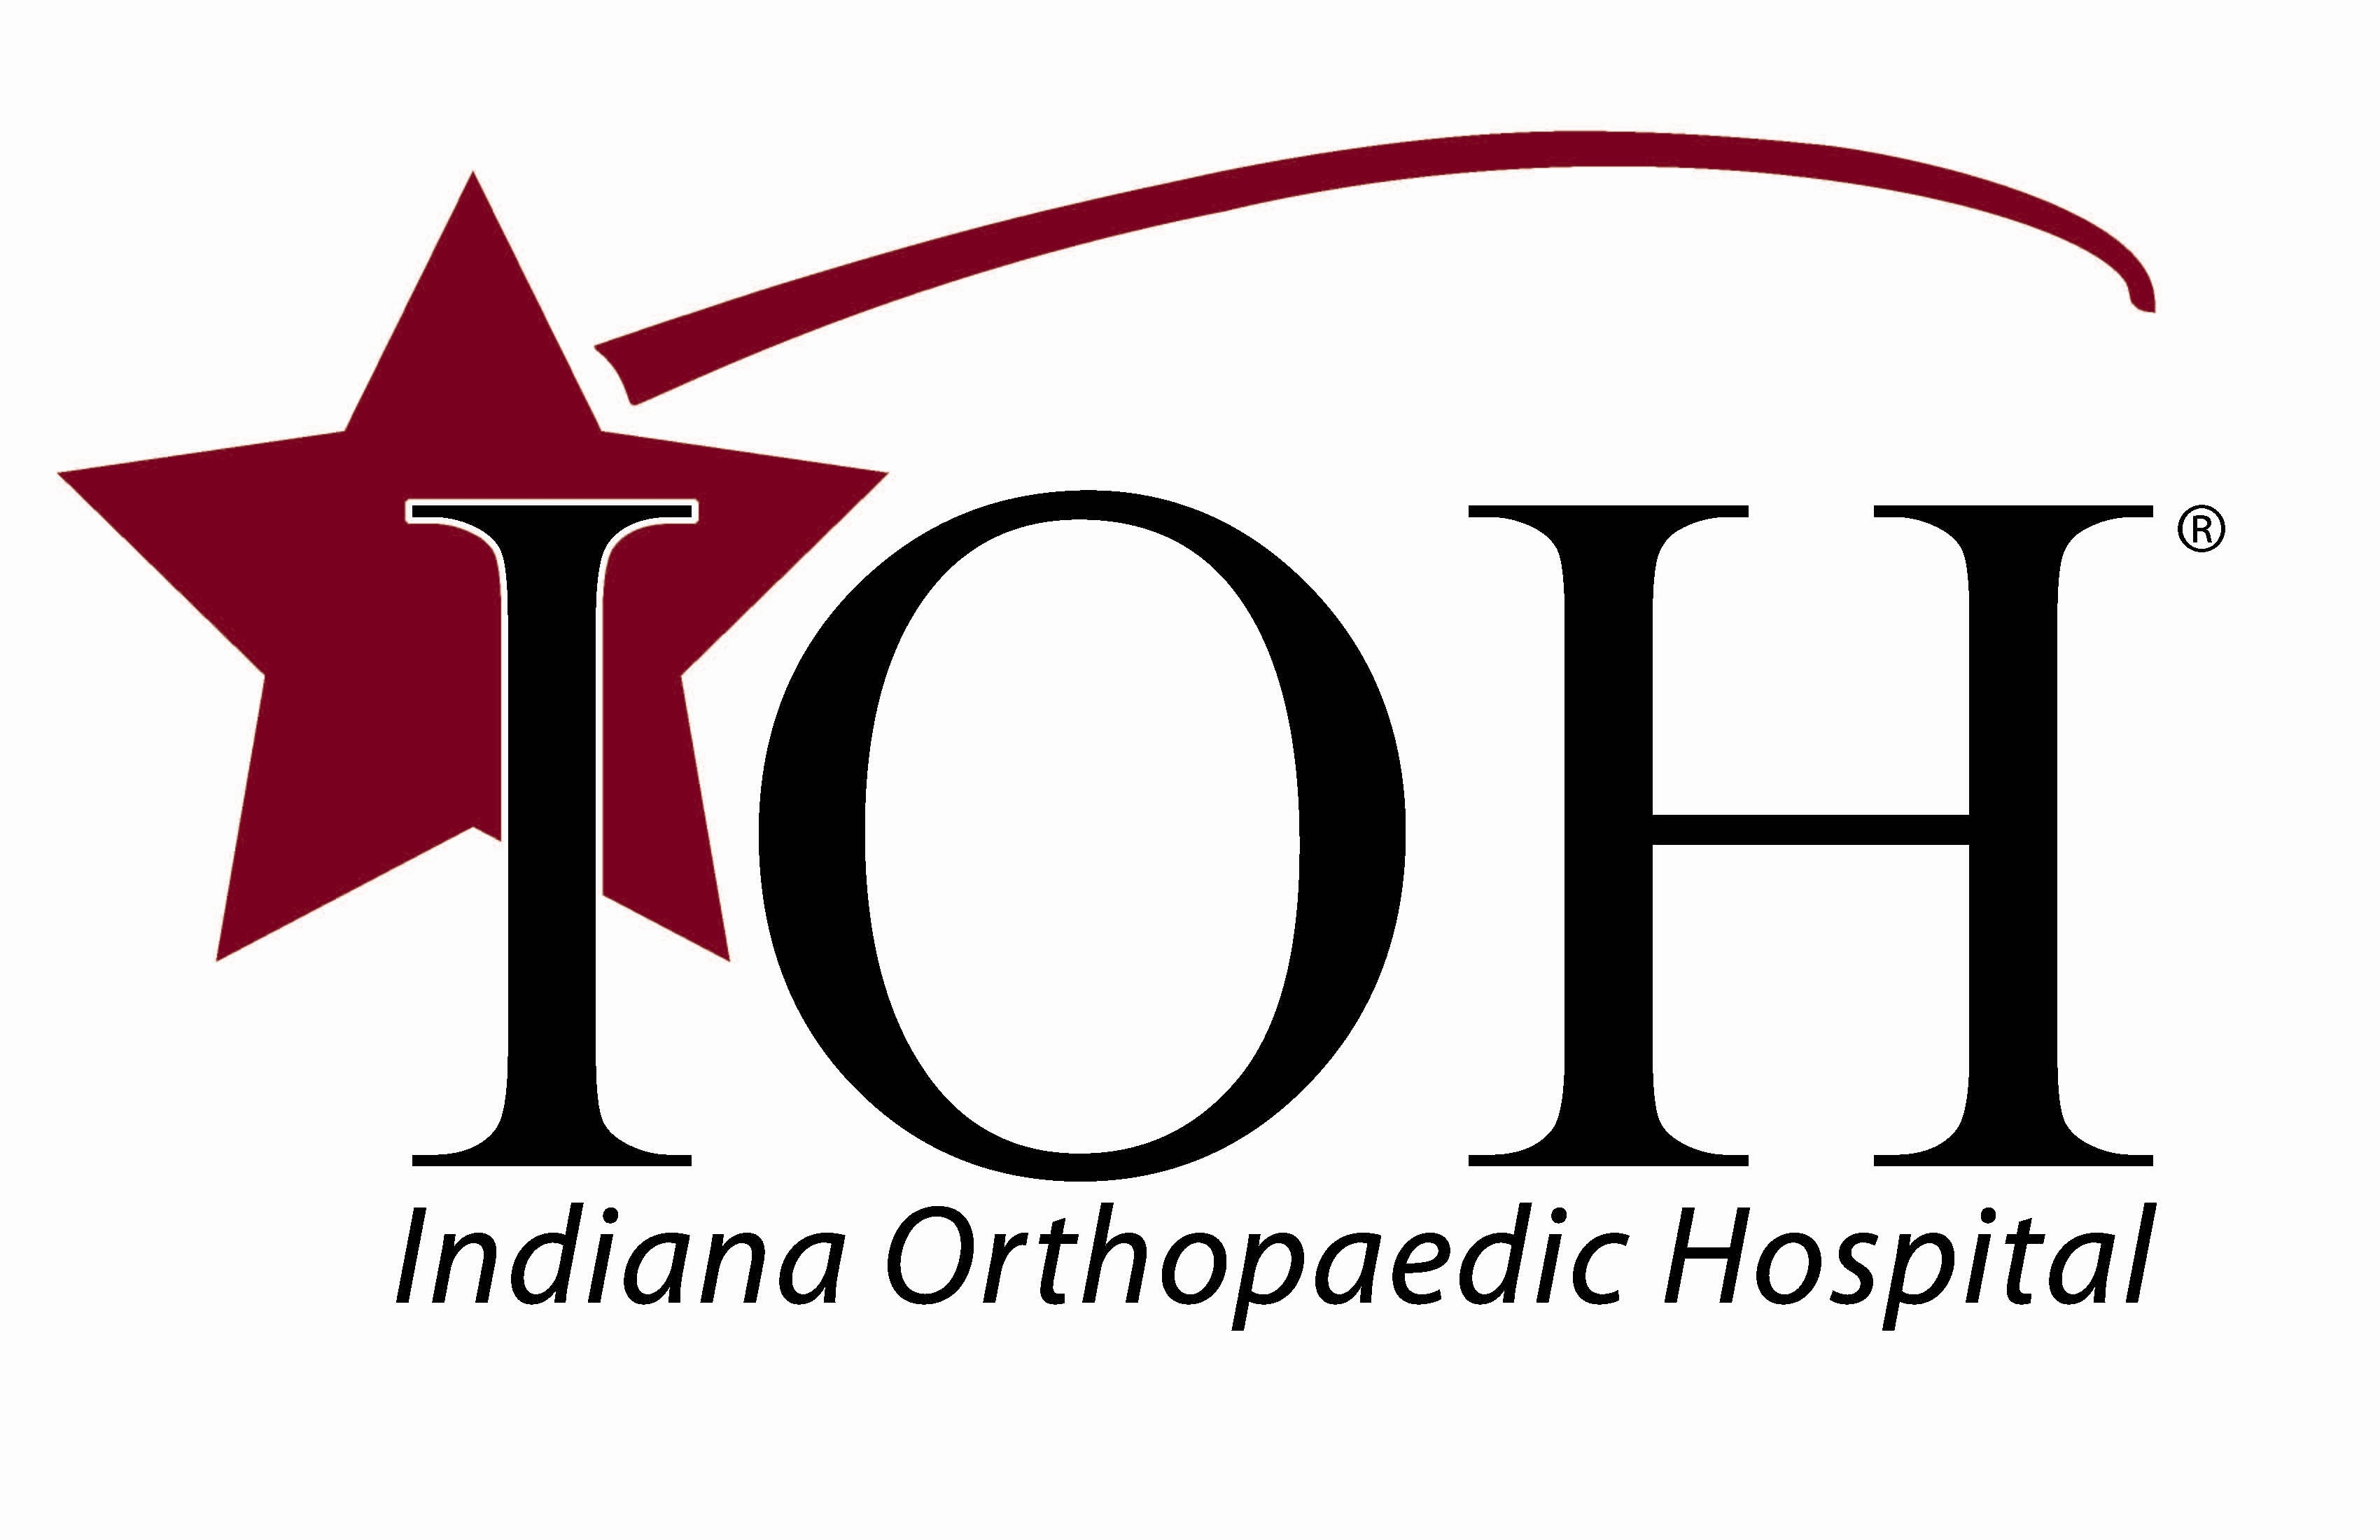 Indiana Orthopaedic Hospital logo